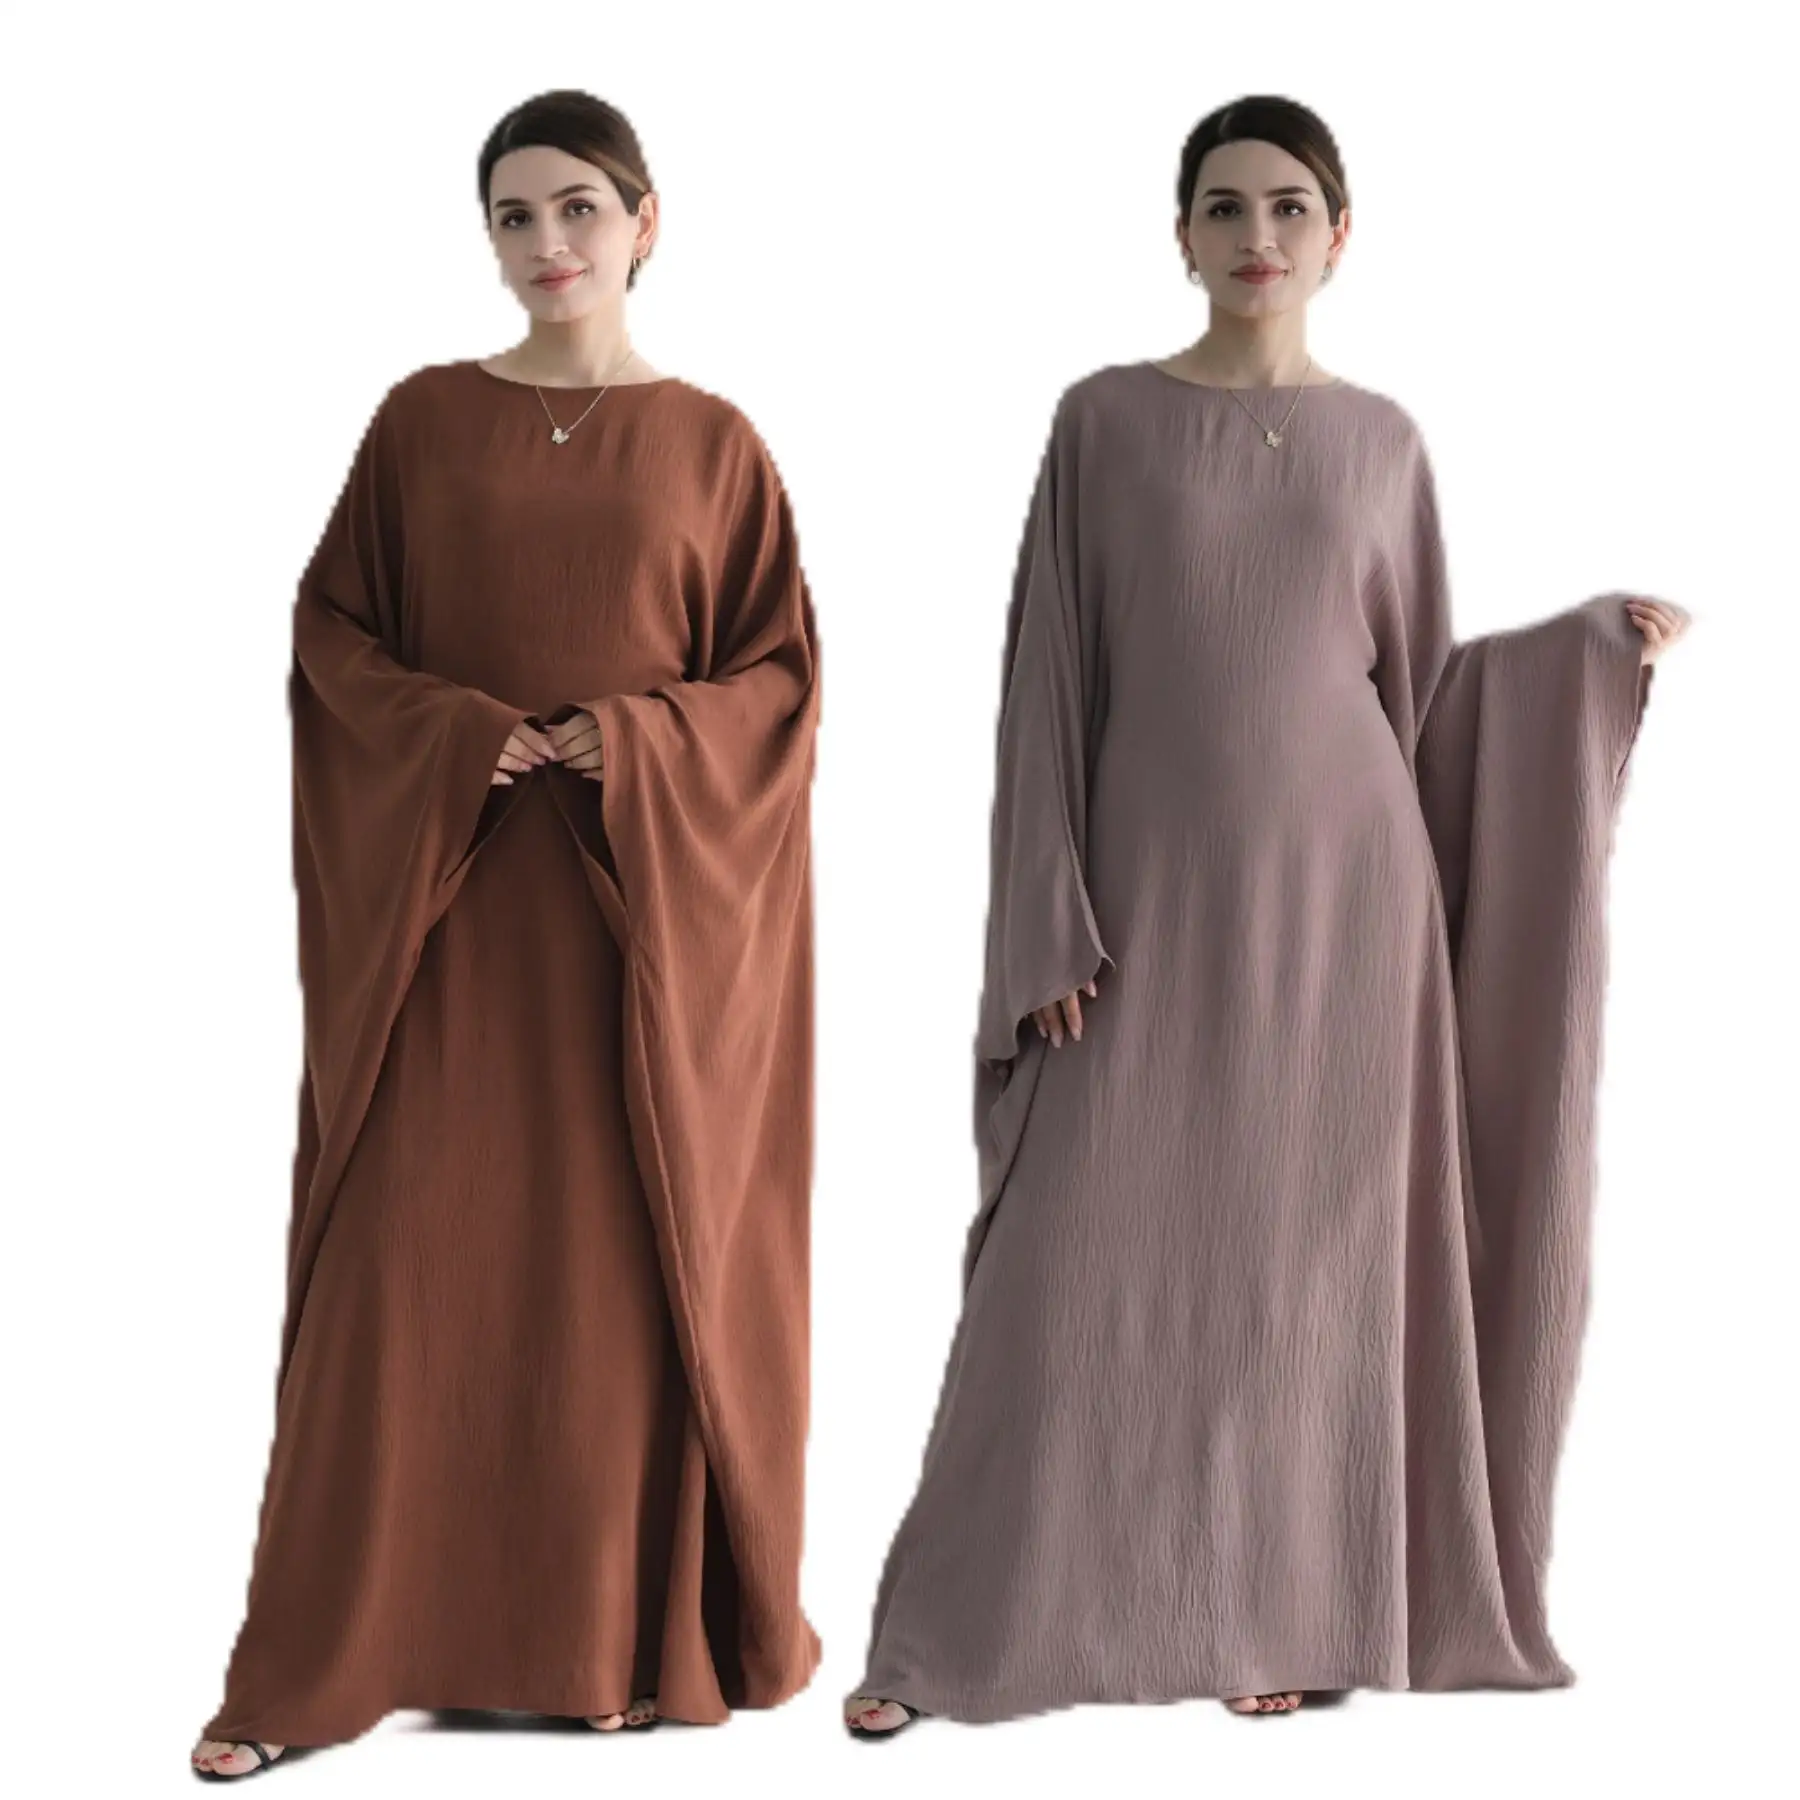 New Design Abaya Turkey Modest Dress Islamic Women Casual Dresses Traditional Muslim Clothing Breathable Abaya slamic Clothing